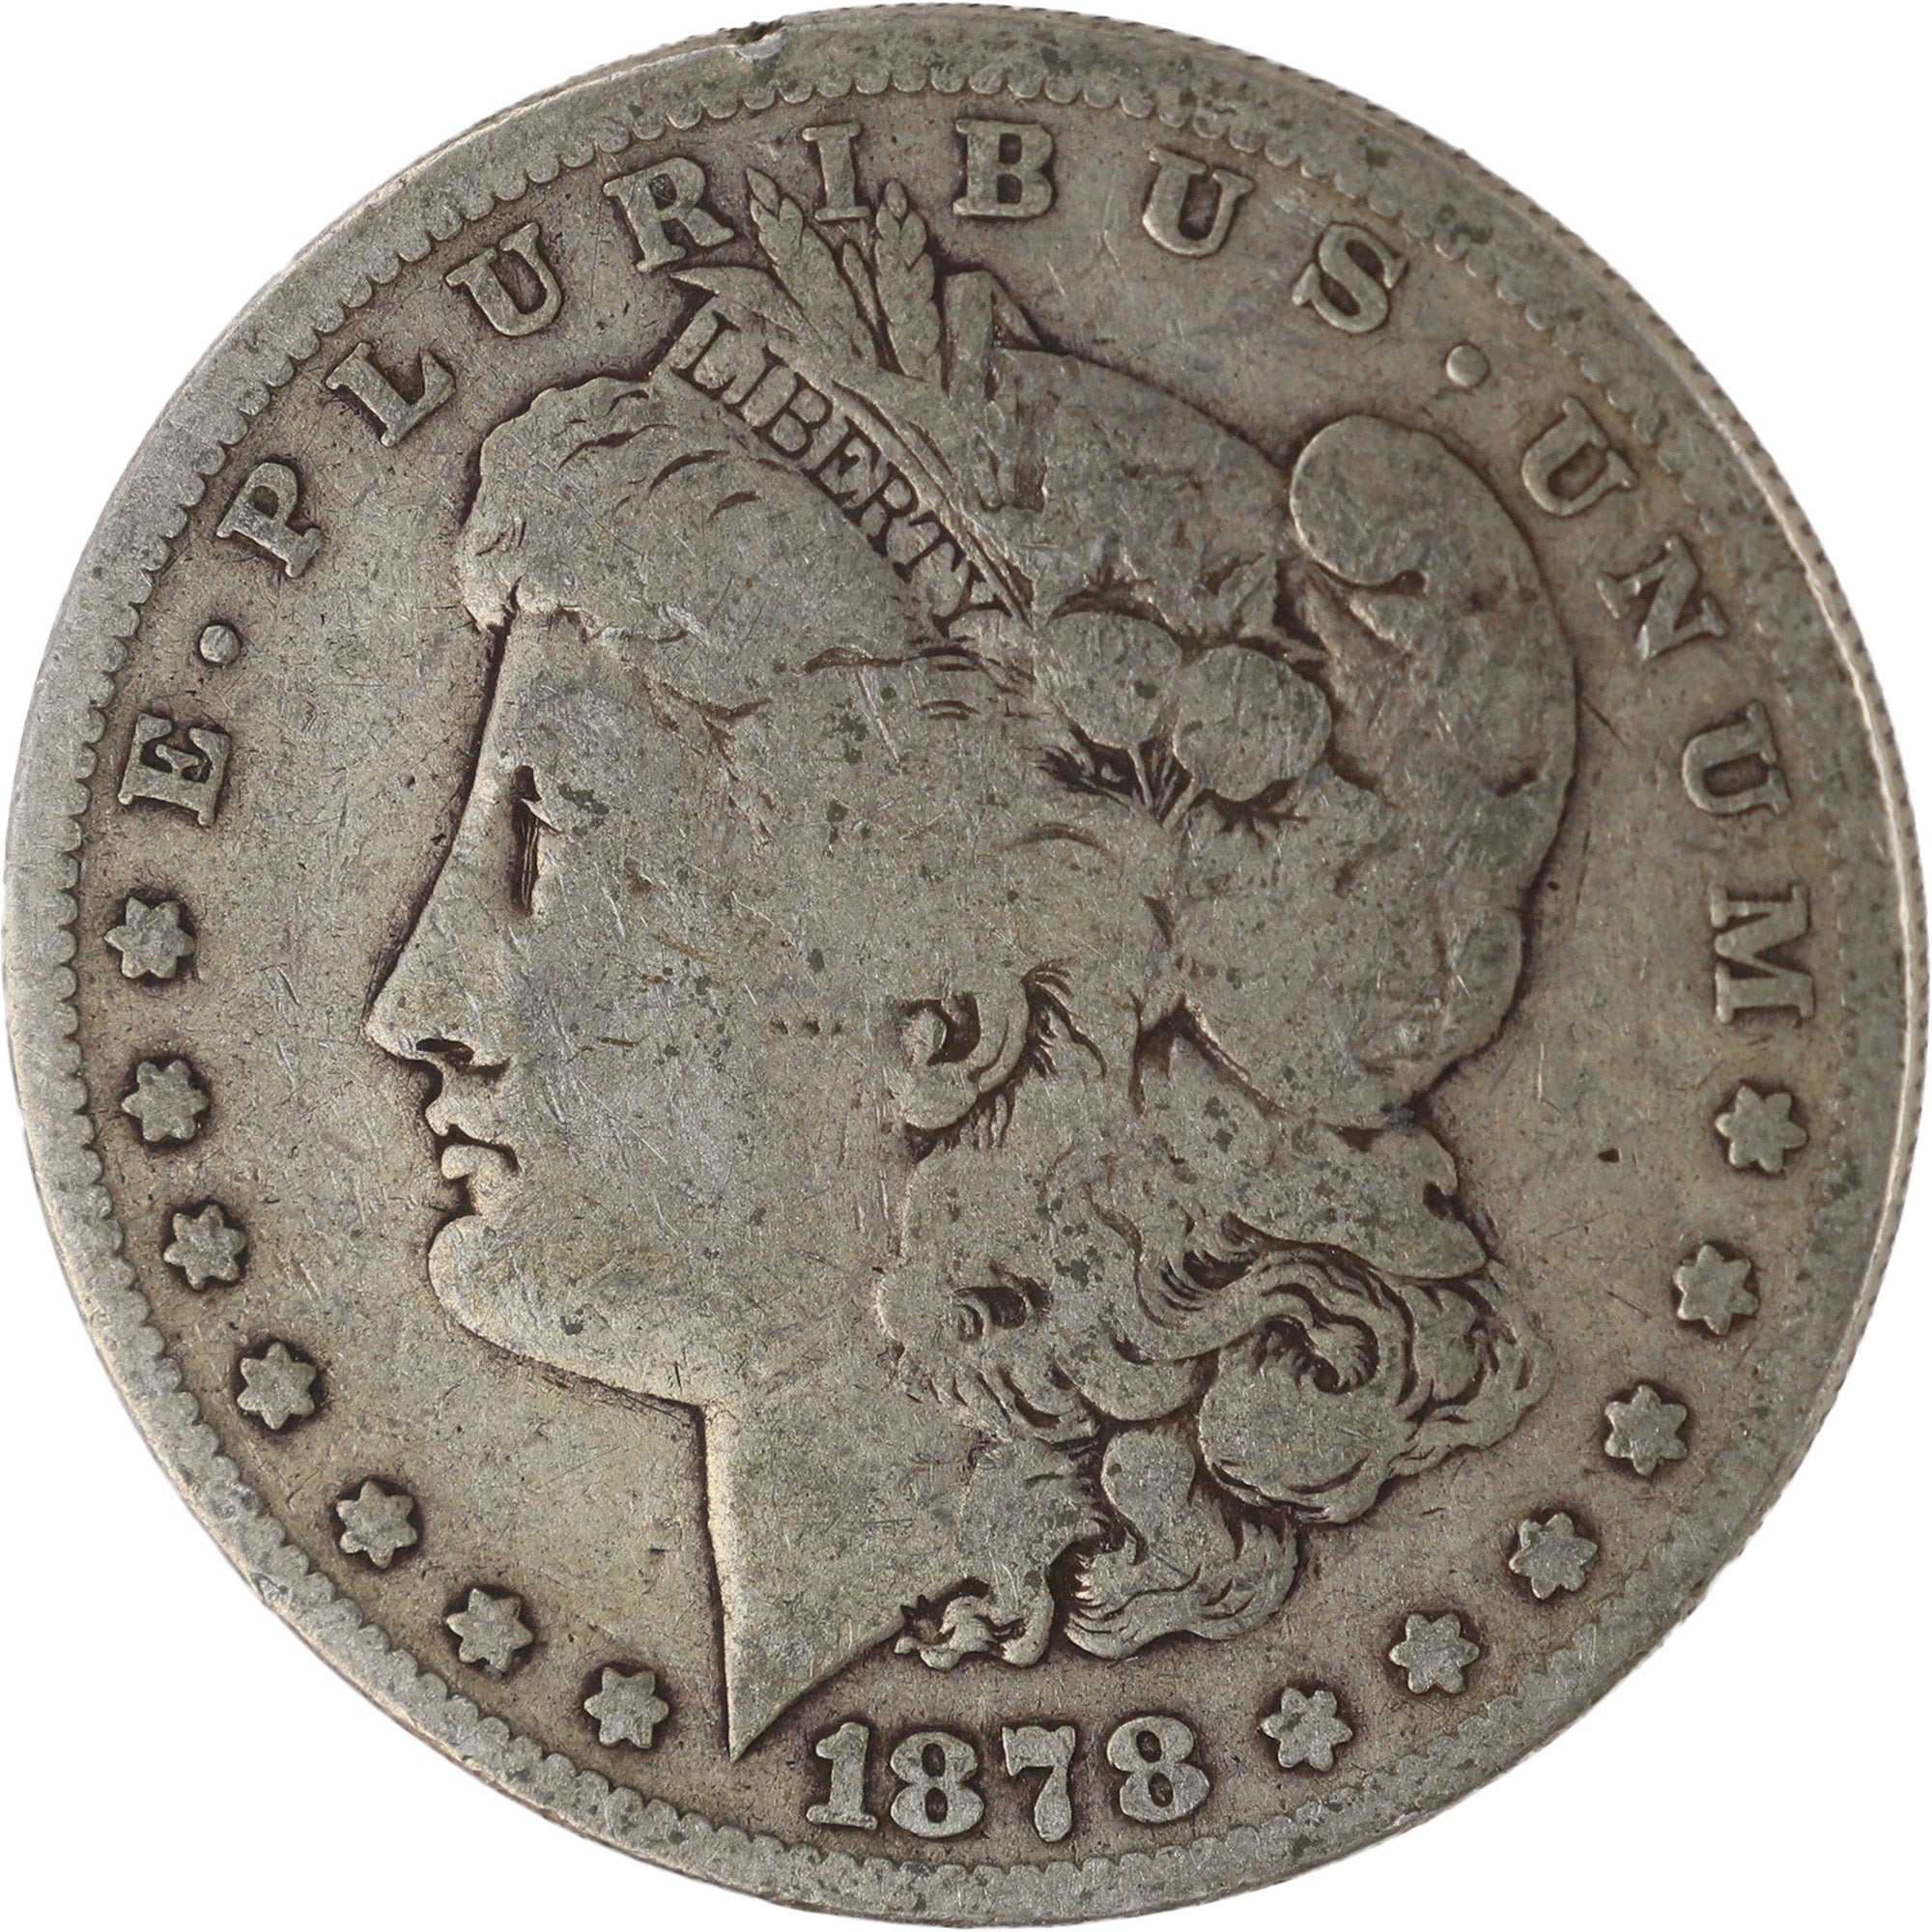 1878 7TF Rev 79 Morgan Dollar VG Very Good Silver $1 Coin SKU:I12002 - Morgan coin - Morgan silver dollar - Morgan silver dollar for sale - Profile Coins &amp; Collectibles